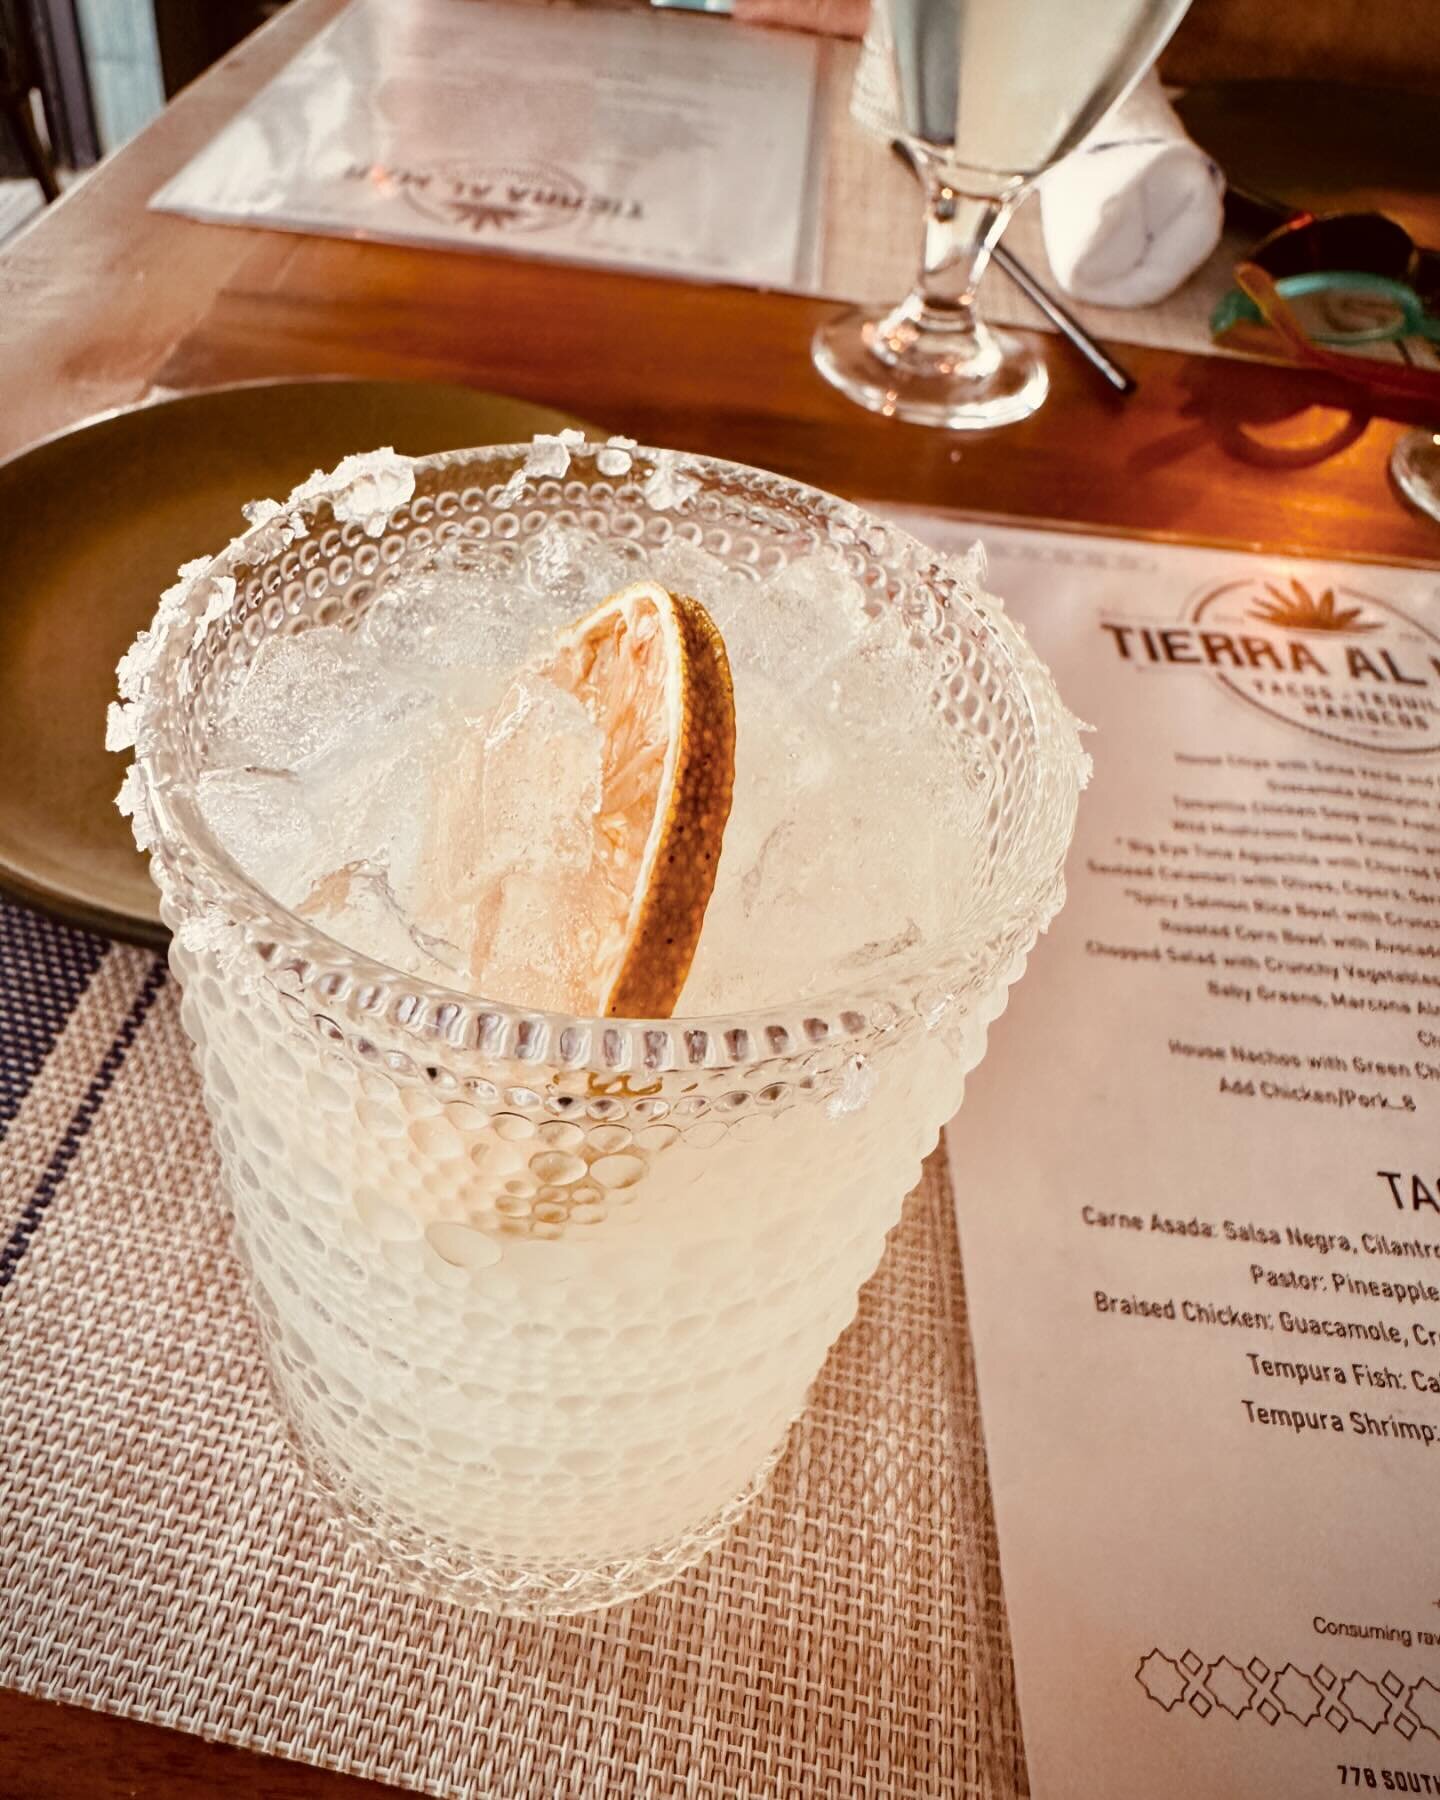 Best Margarita in town! #happyhour  @tierraalmarmtp